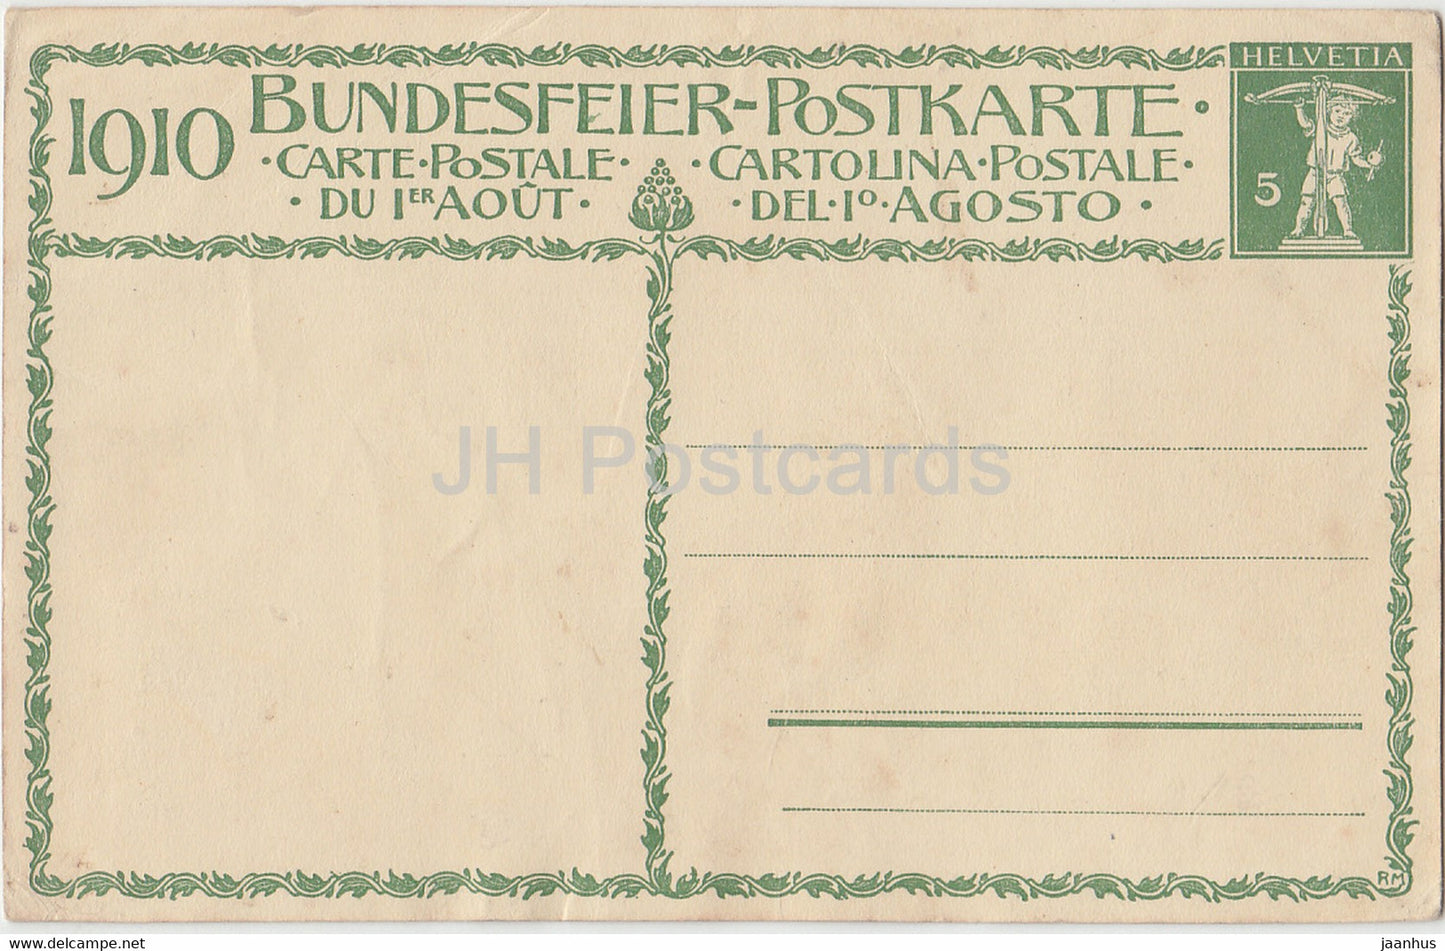 Die Wachter der Heimat Pro Patria - Bundesfeier Postkarte - alte Postkarte - 1910 - Schweiz - unbenutzt